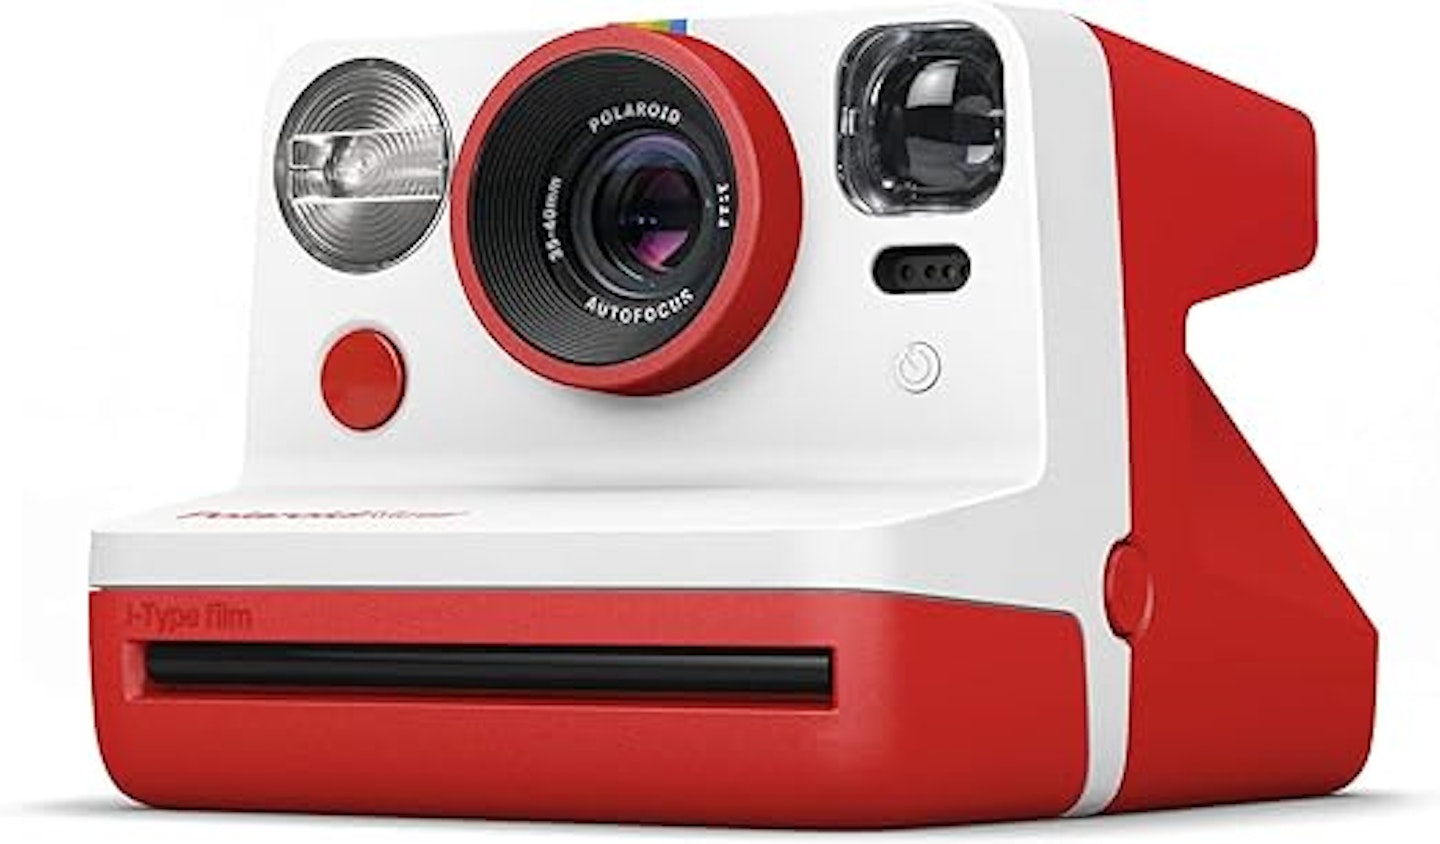 Polariod cameras for kids